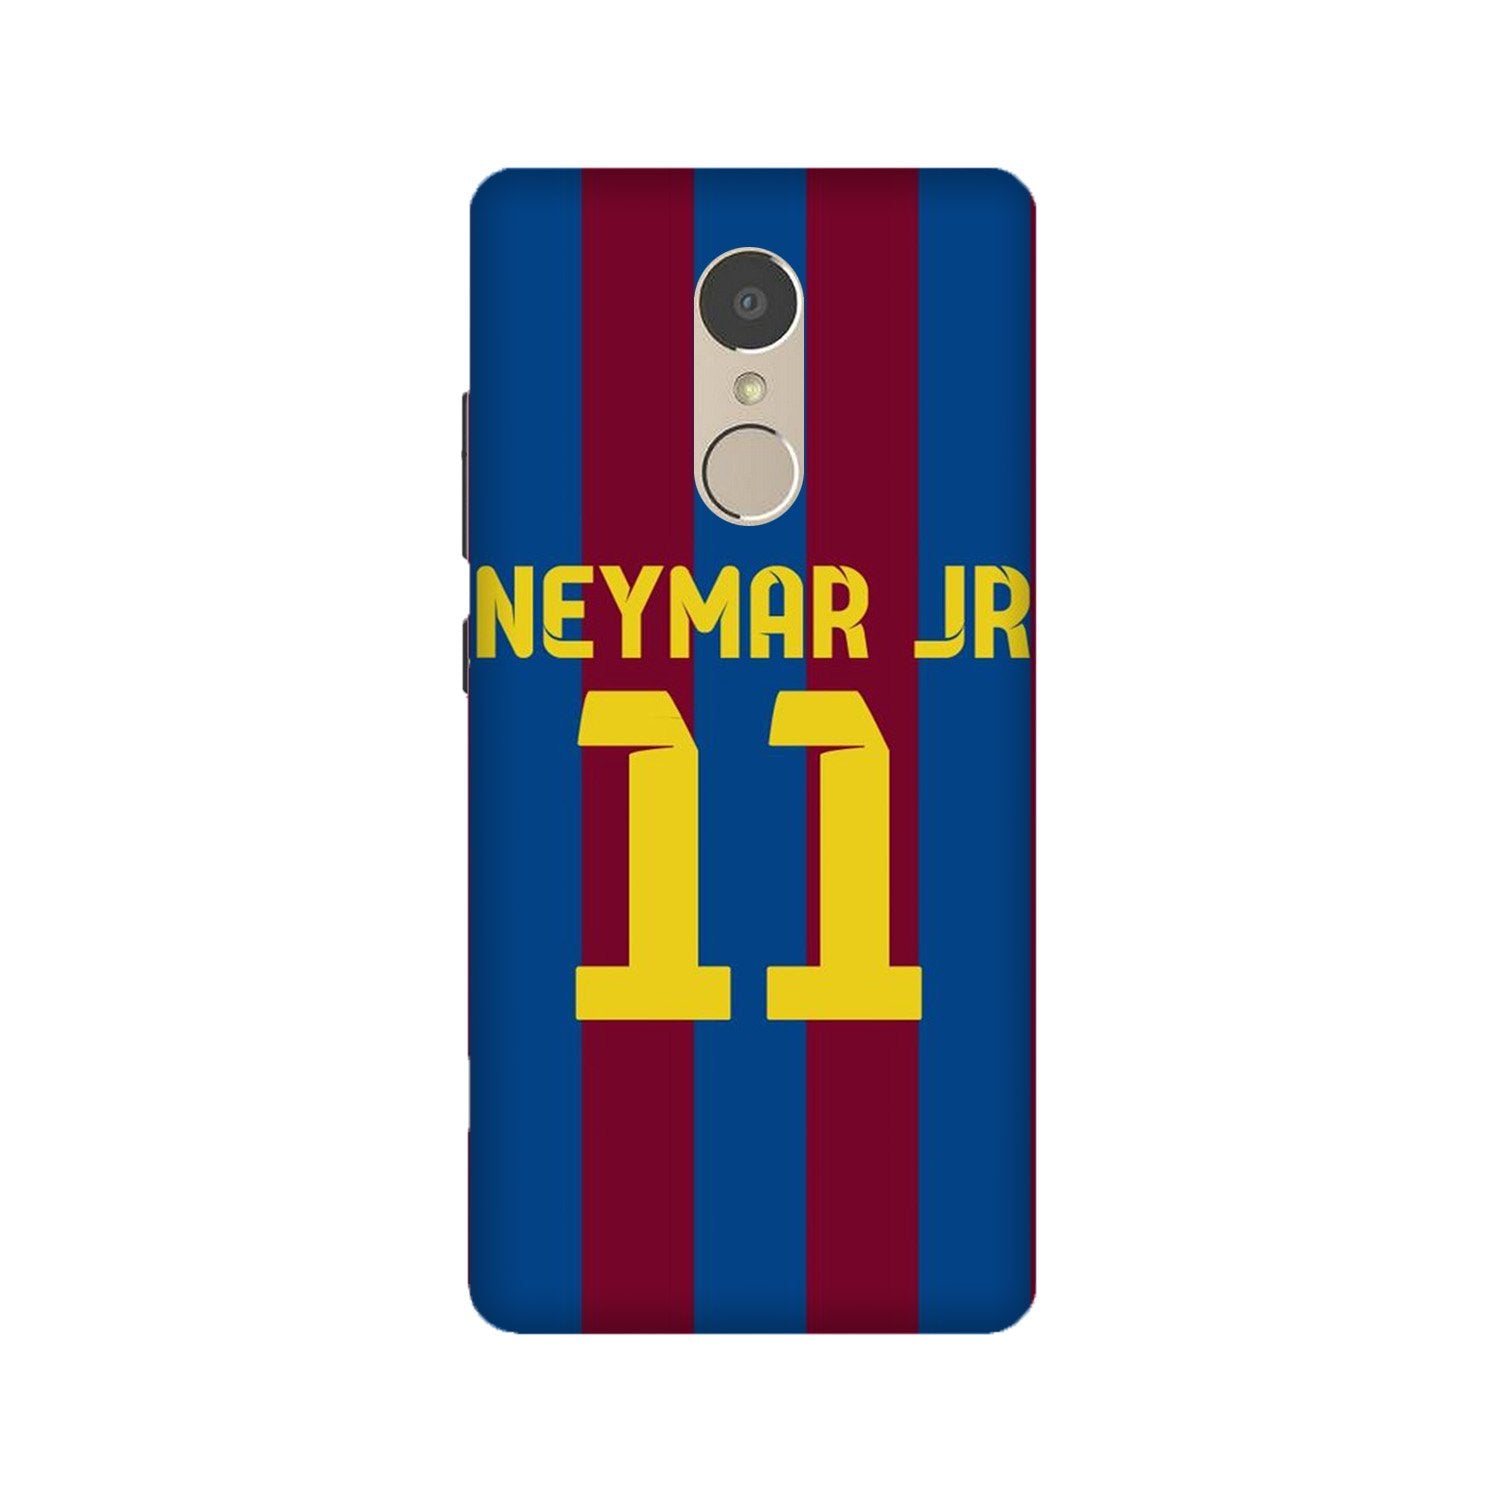 Neymar Jr Case for Lenovo K6 Note(Design - 162)